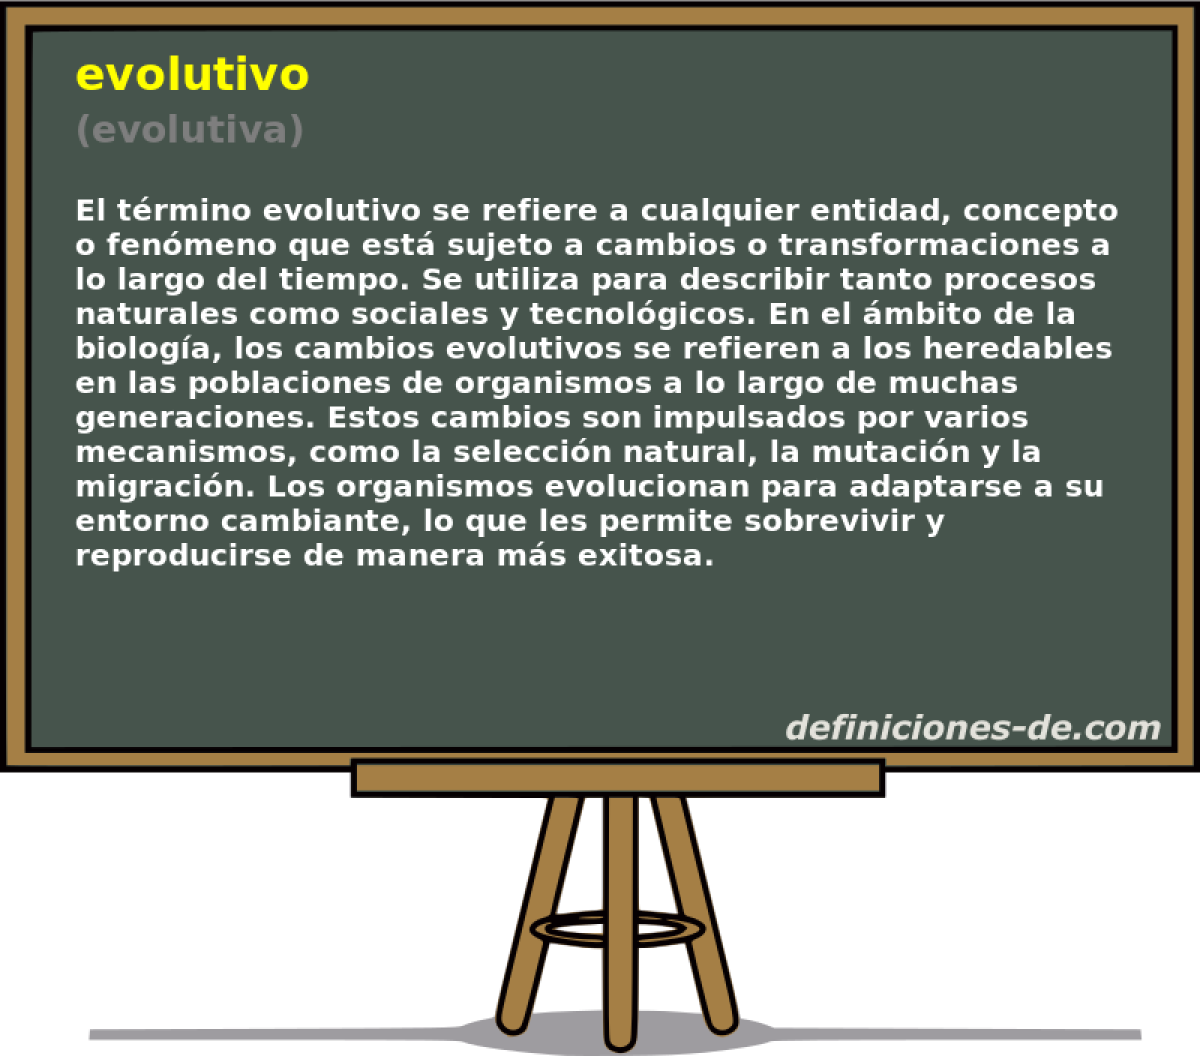 evolutivo (evolutiva)